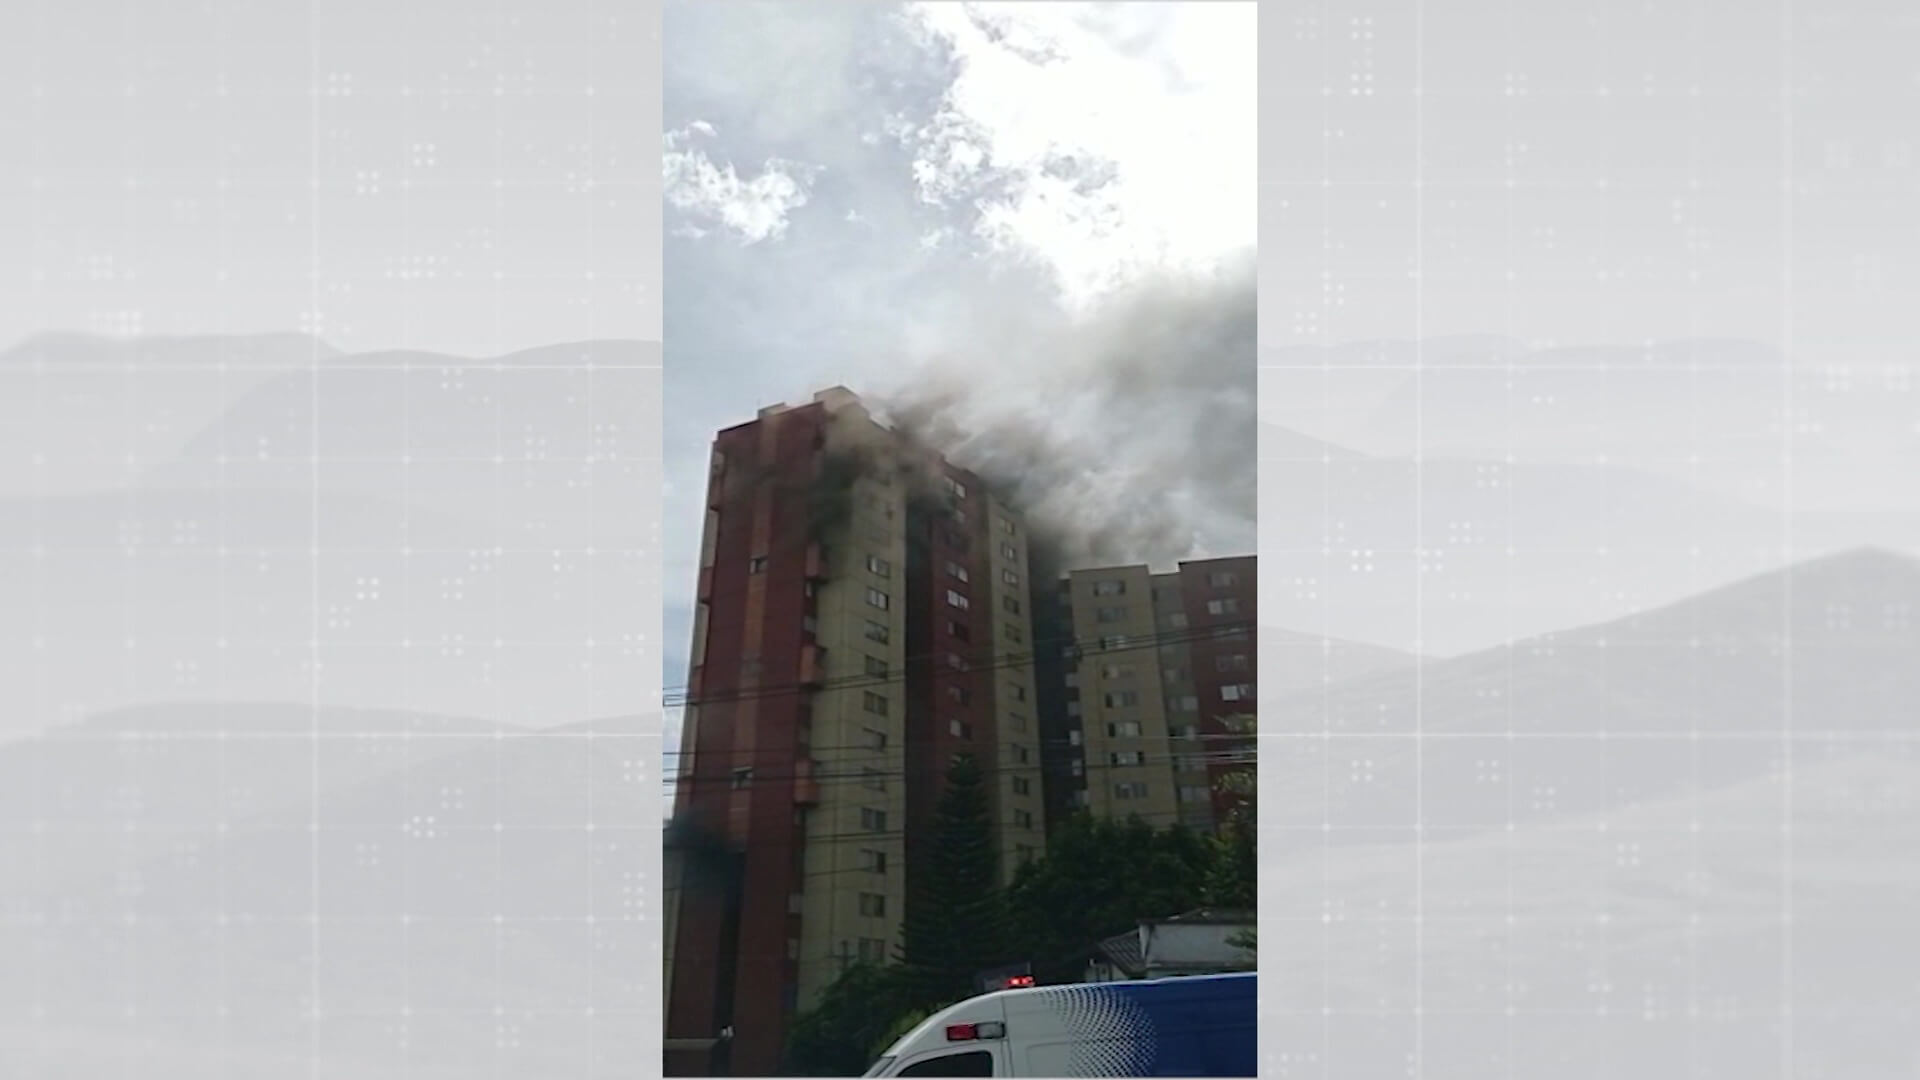 650 personas evacuadas por incendio en un edificio